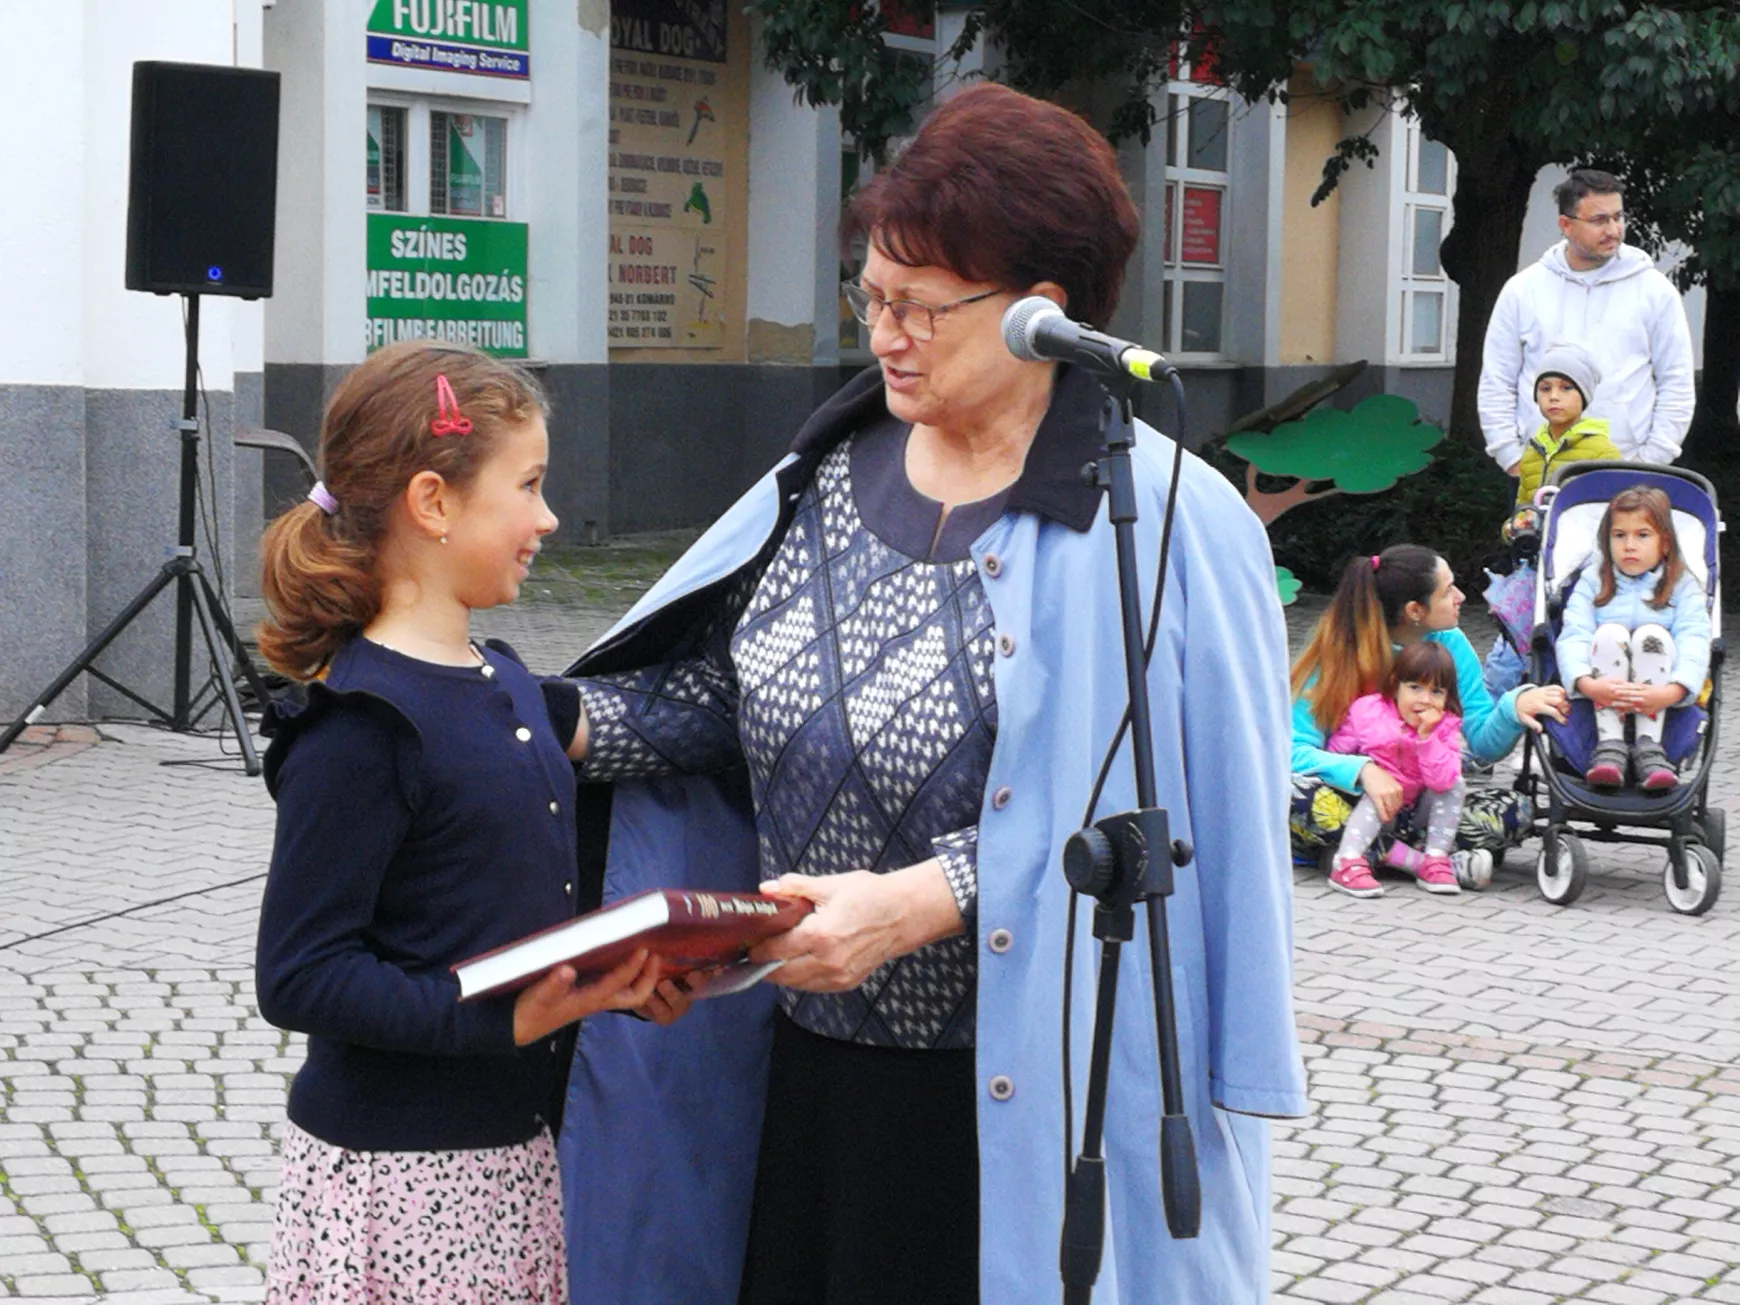 Tizedszer ünnepelték a magyar népmese napját Komáromban